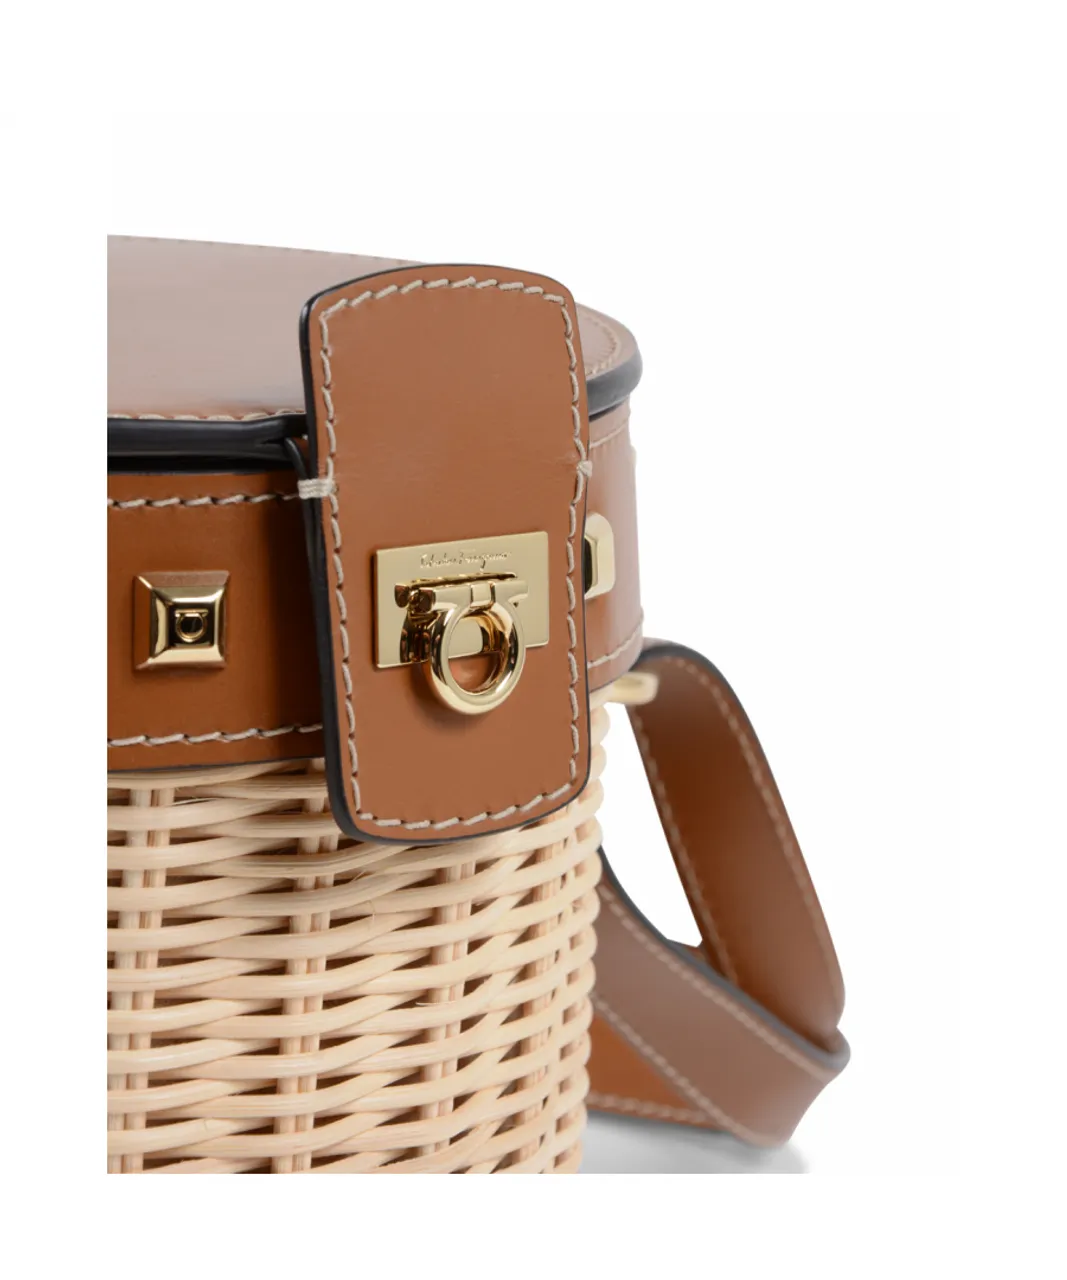 Salvatore Ferragamo Womens Shoulder Bag 22D159 684013 - Multicolour Leather - One Size